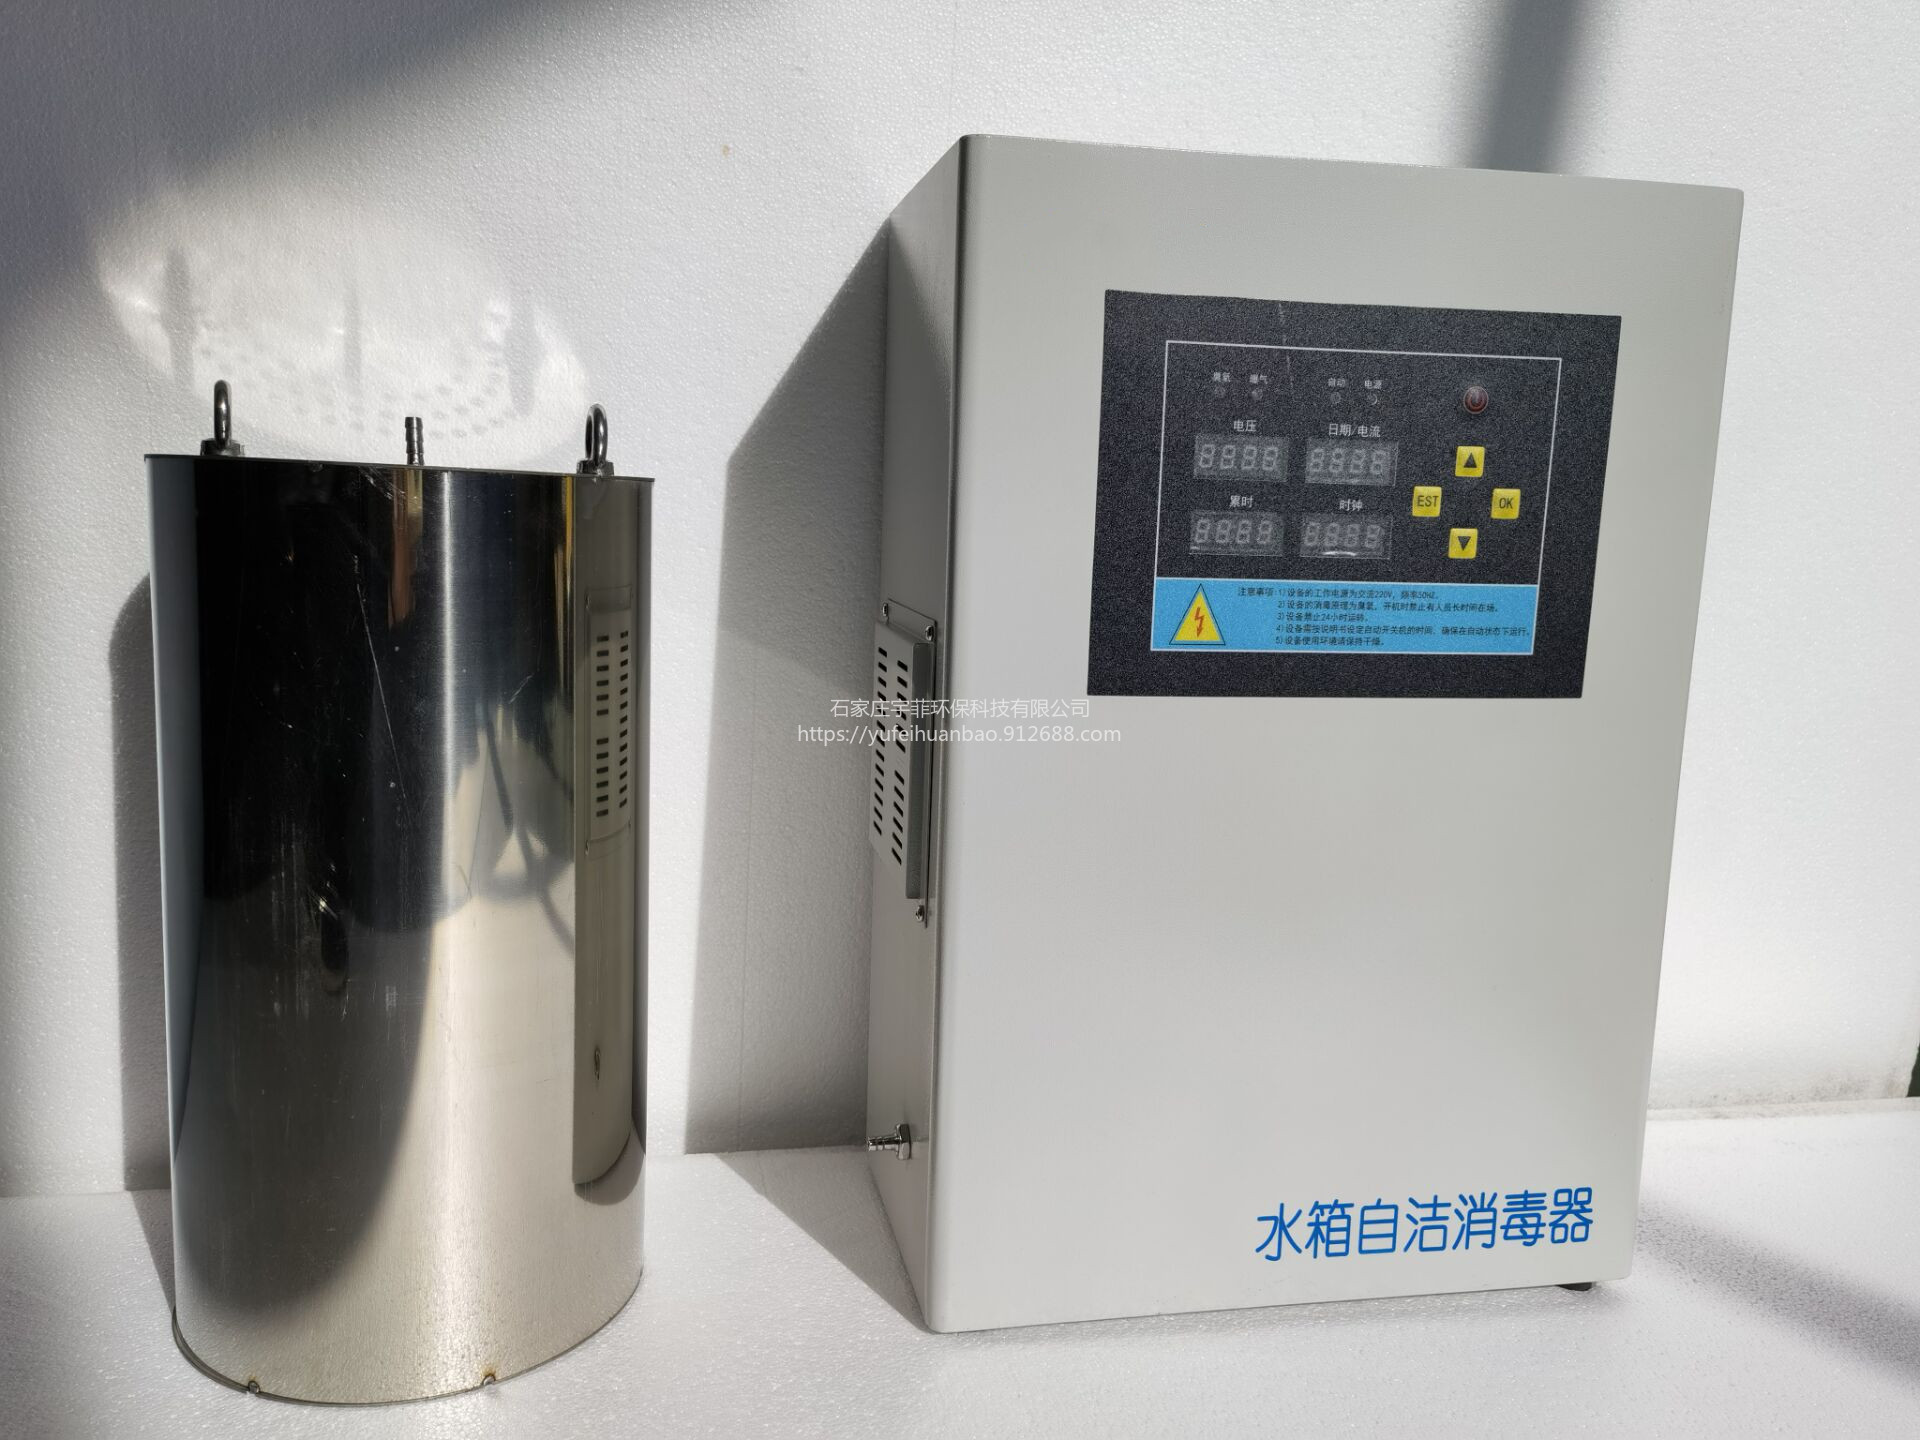 宇菲供应WTS-2A系列水箱臭氧发生器臭氧发生单元模块化